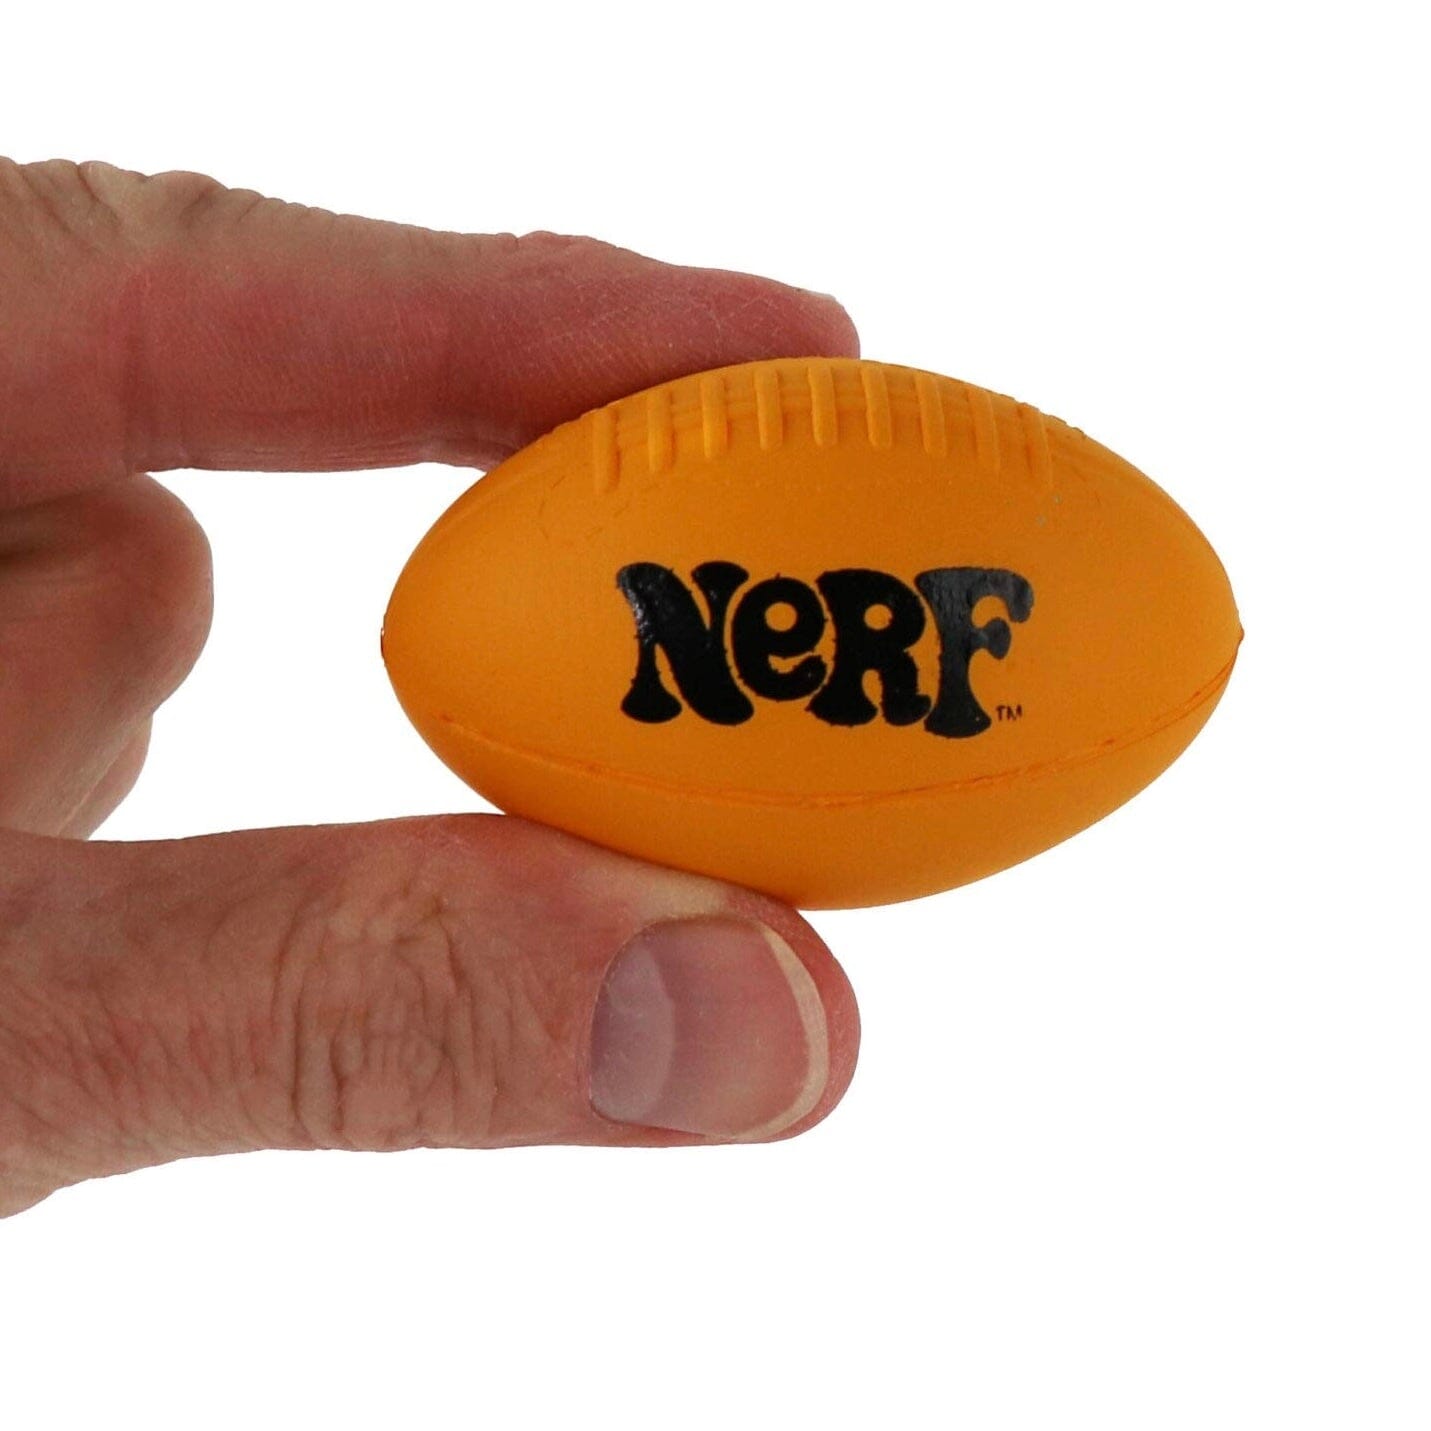 World's Smallest Official Nerf Football Super Impulse 